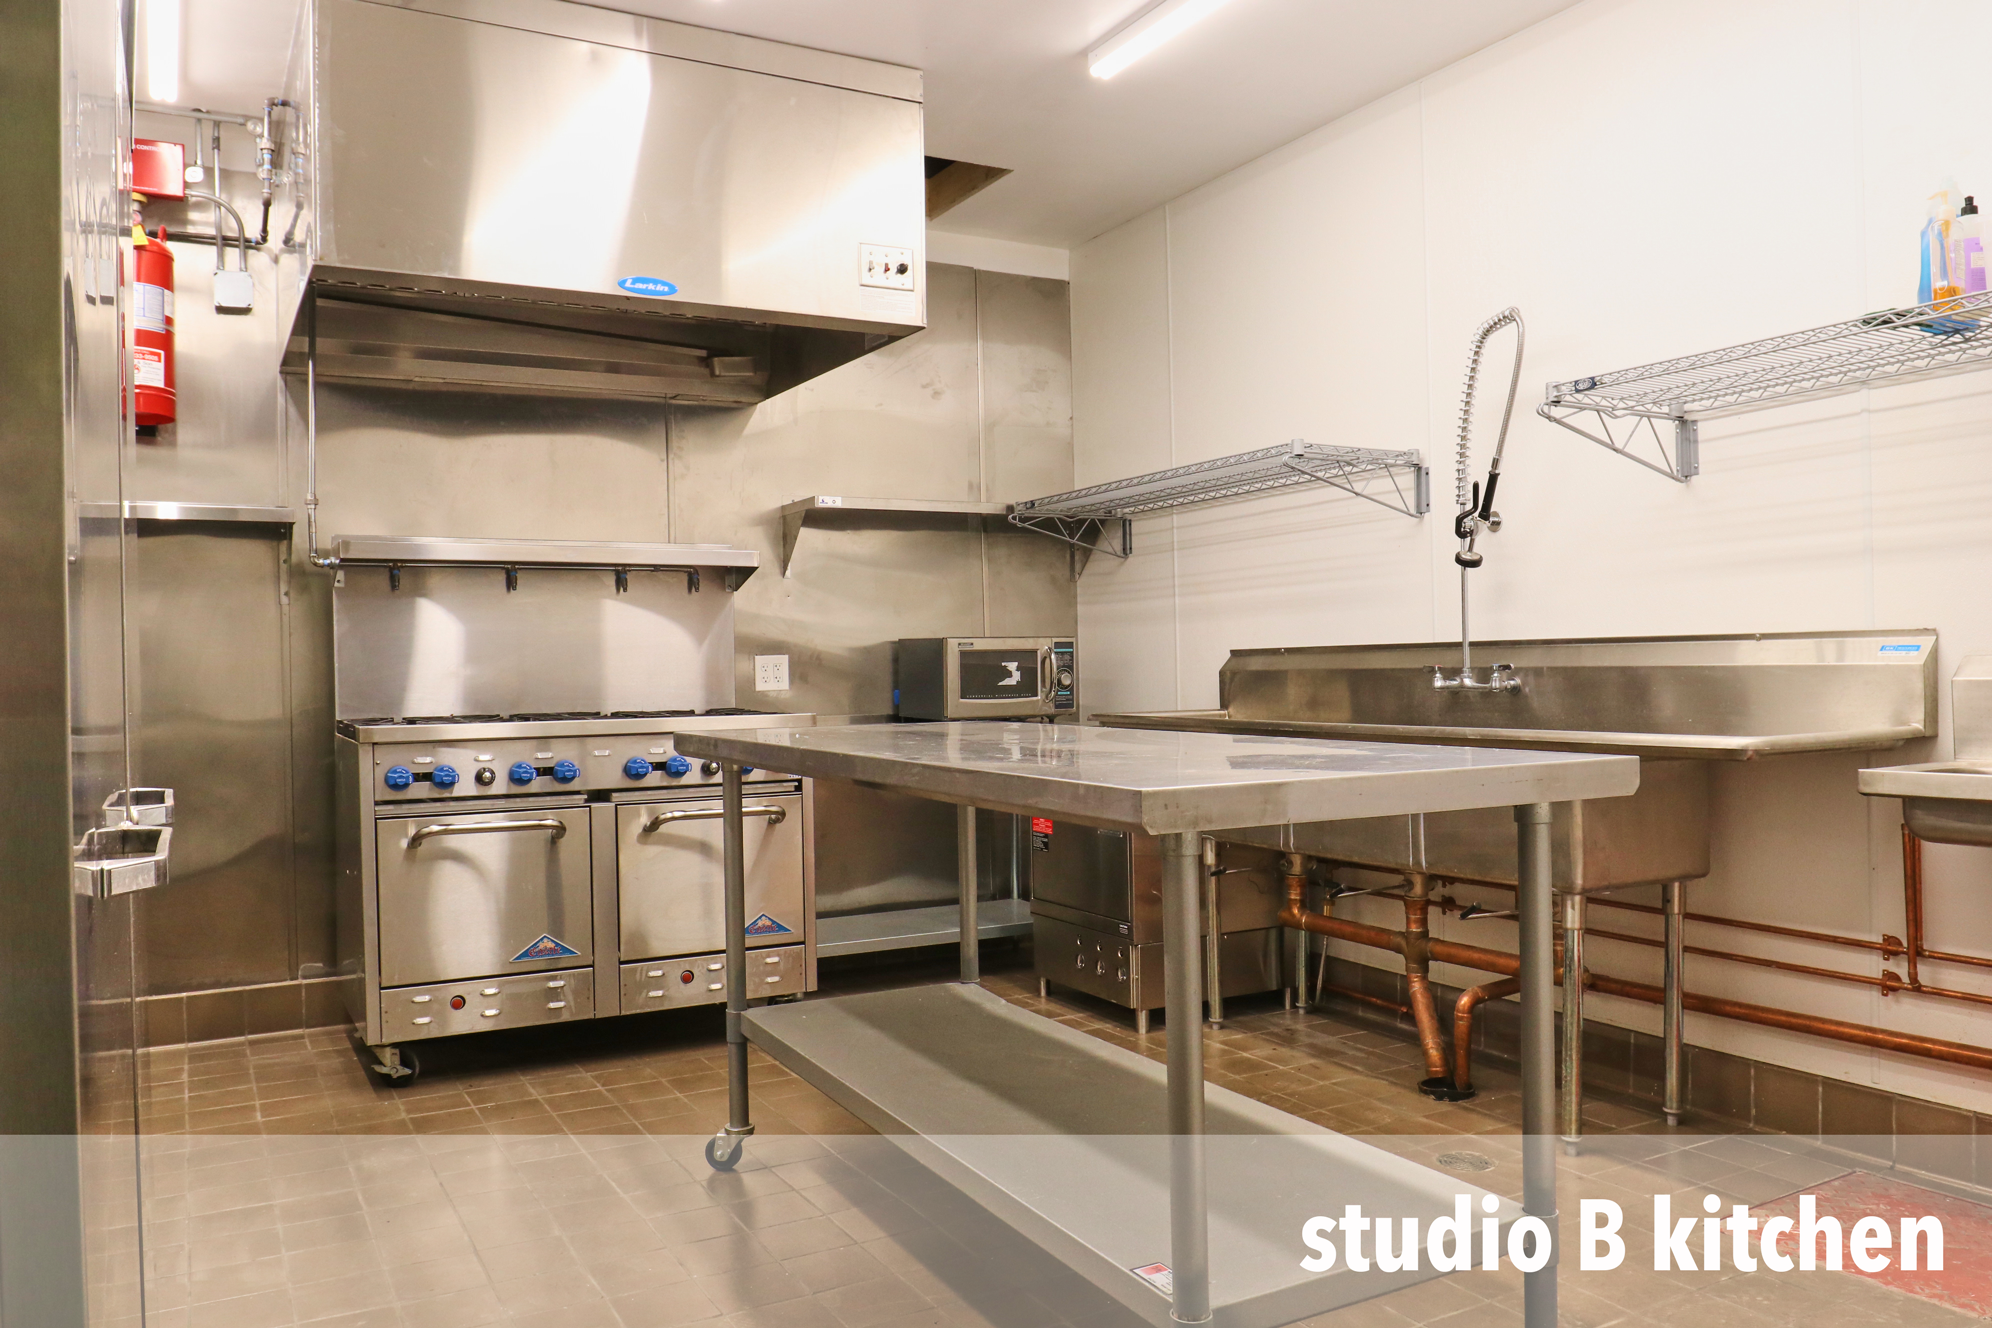 studio-B-kitchen-6.png